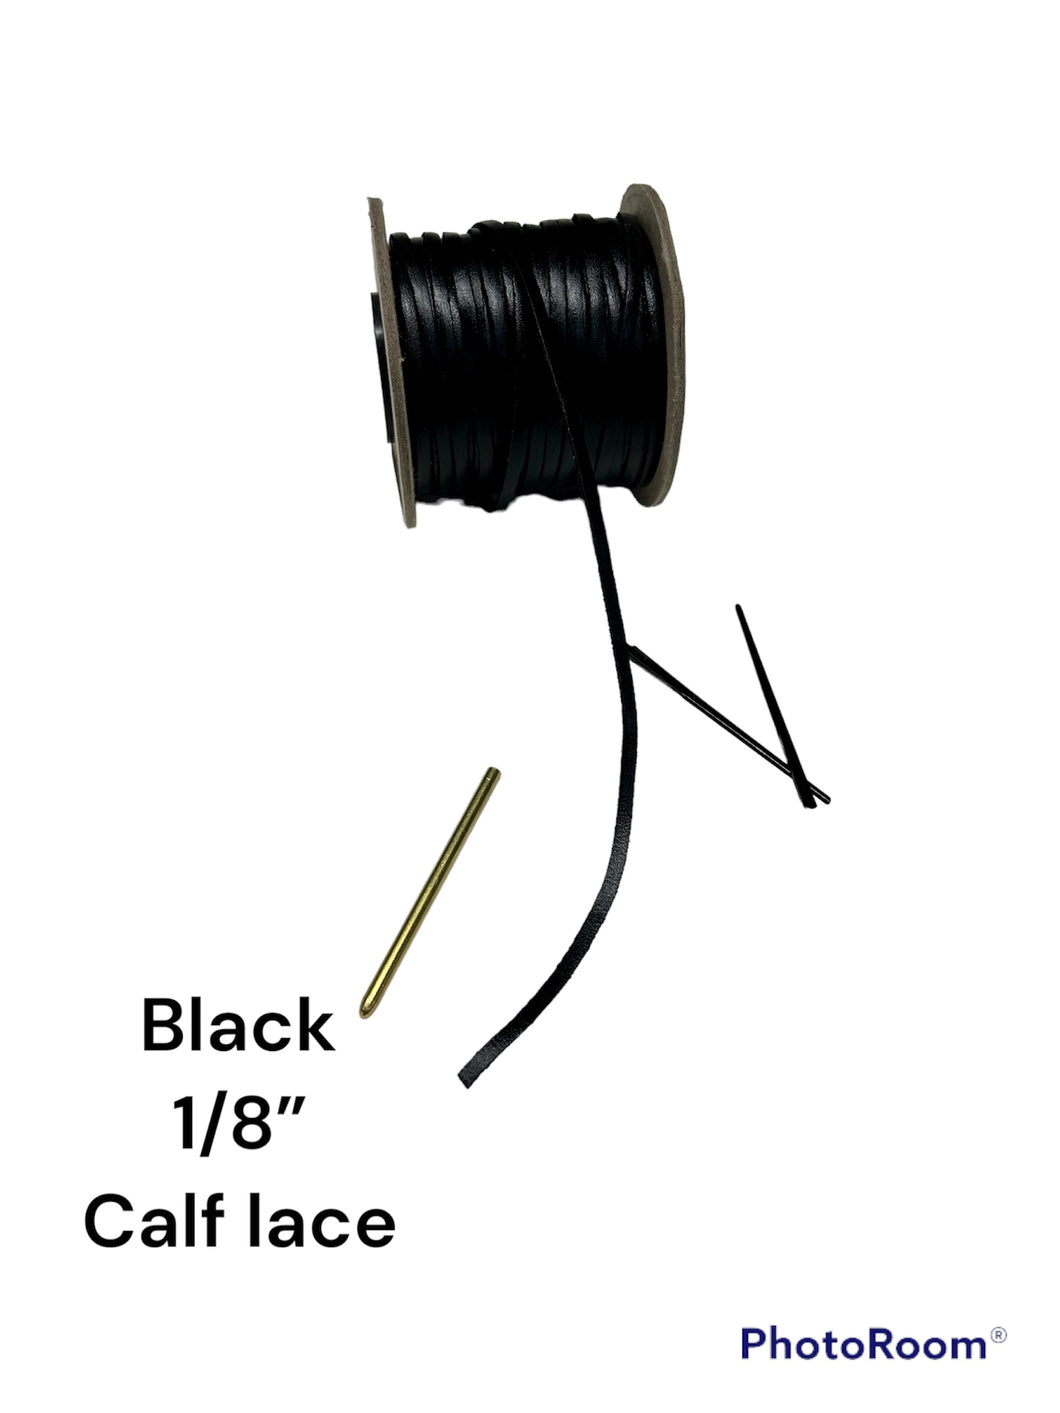 Black 1/8” Calf lace